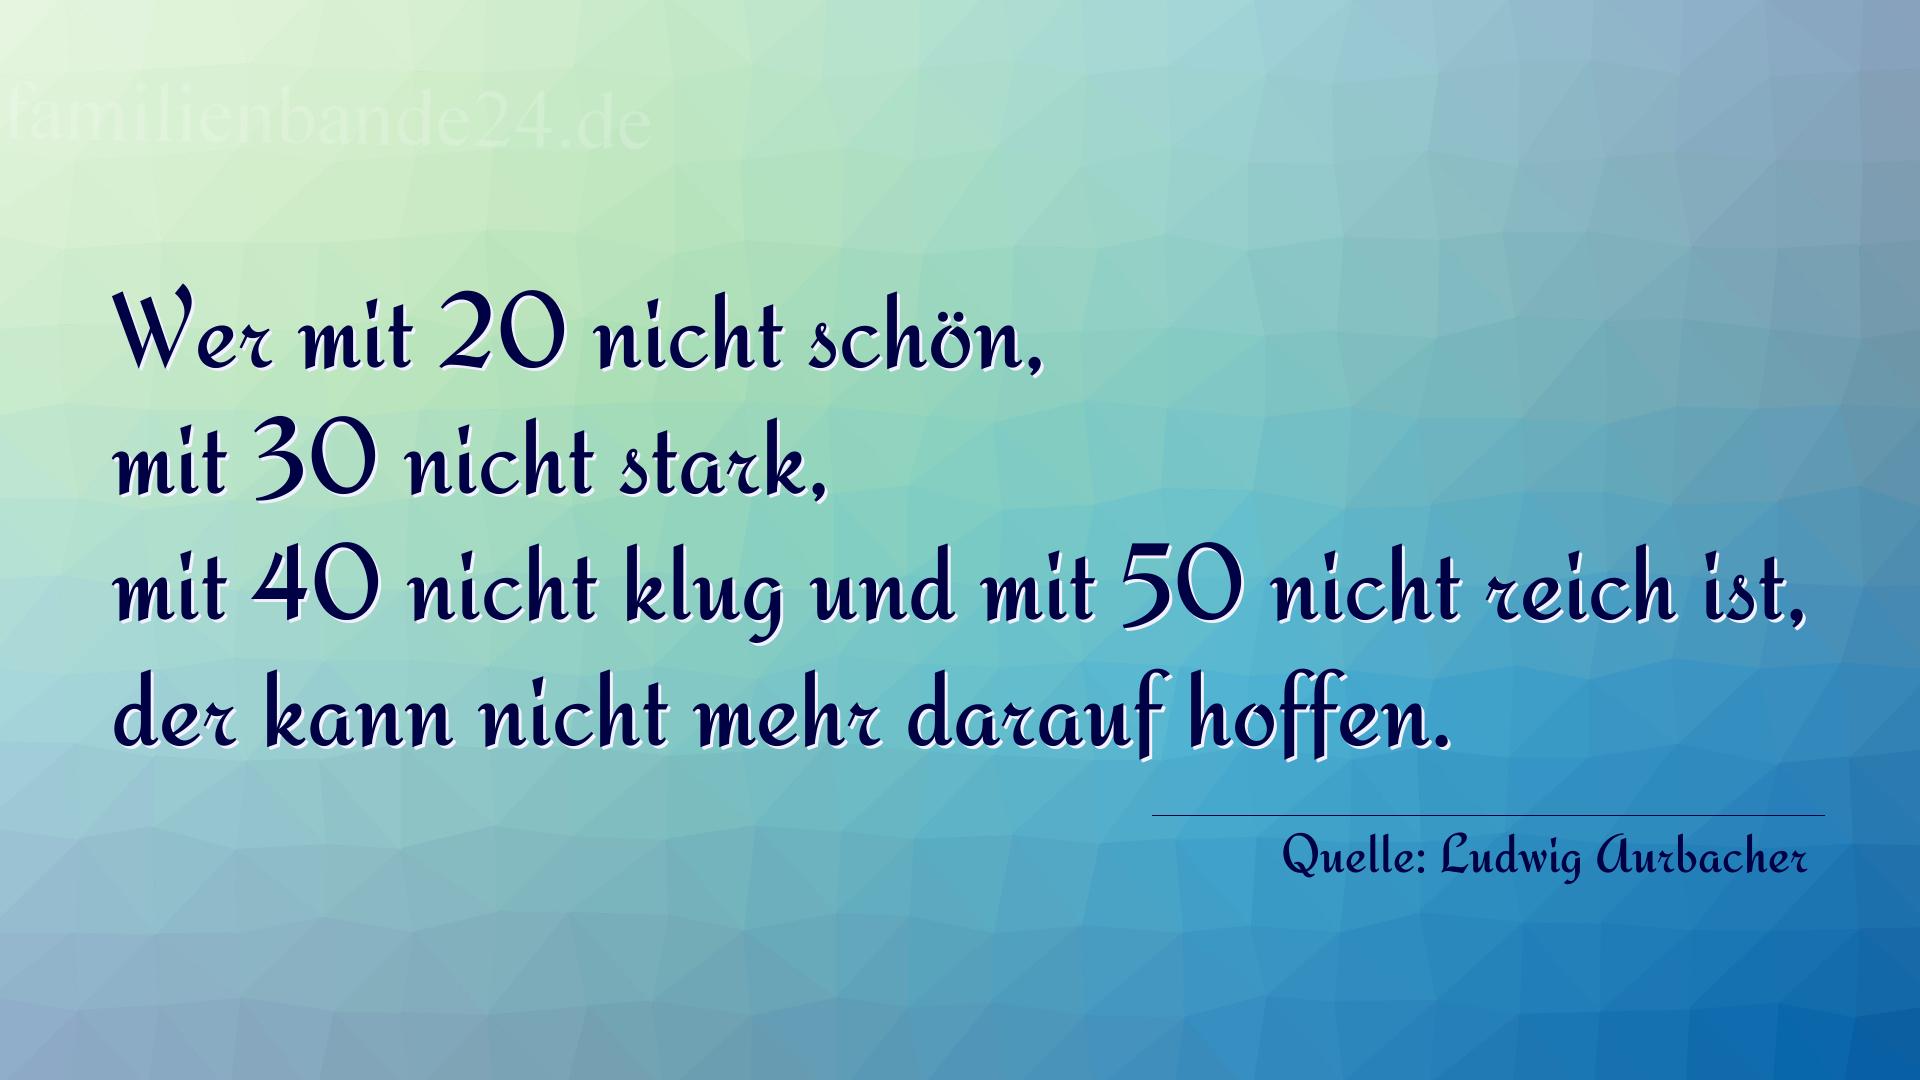 Aphorismus Nummer 1228 (von Ludwig Aurbacher): "Wer mit 20 nicht schön, mit 30 nicht stark, mit 40 nicht [...]